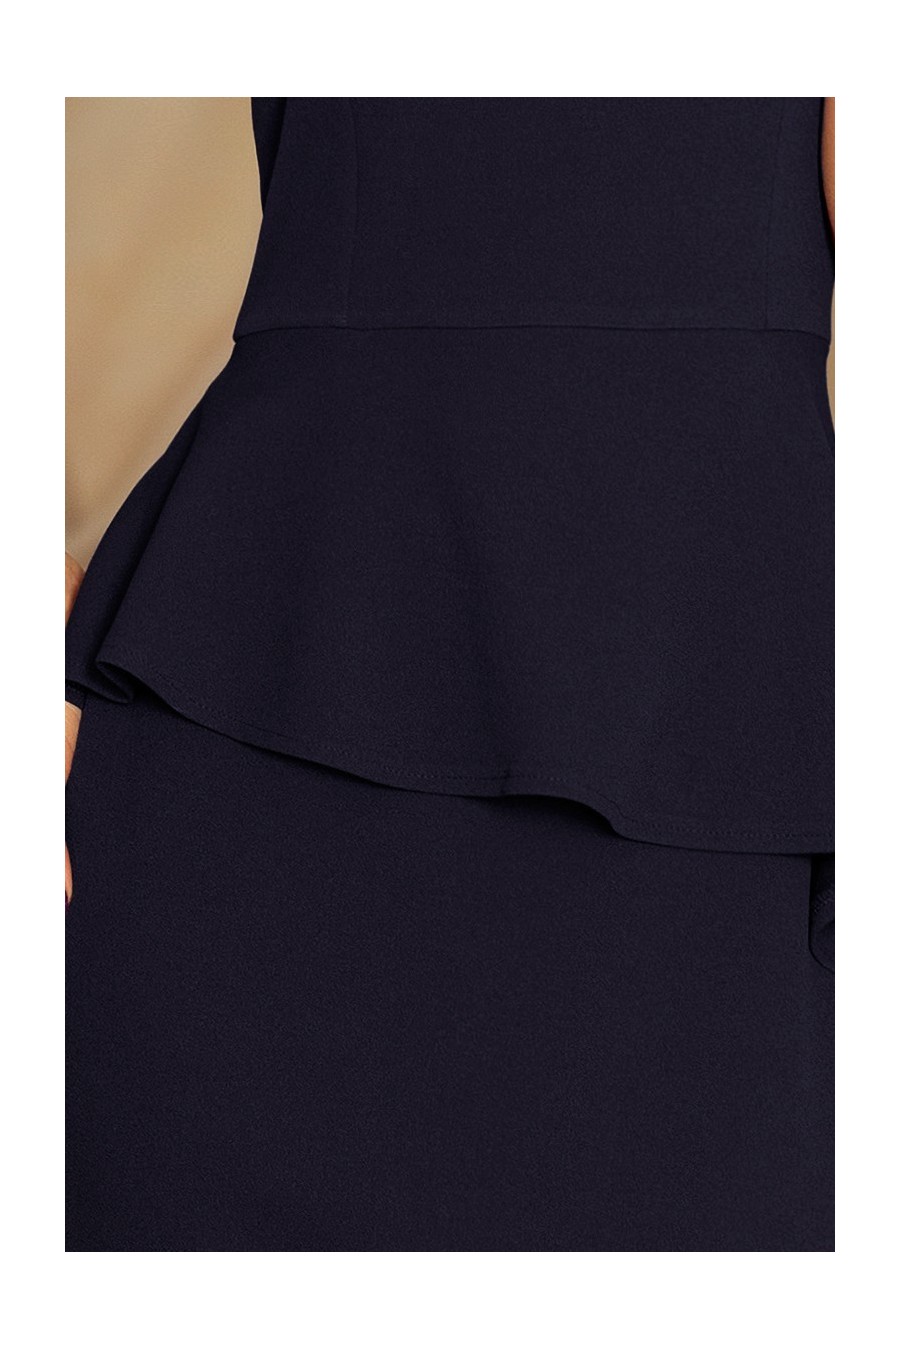 192-4 Elegantní midi šaty s volánky - tmavé modré